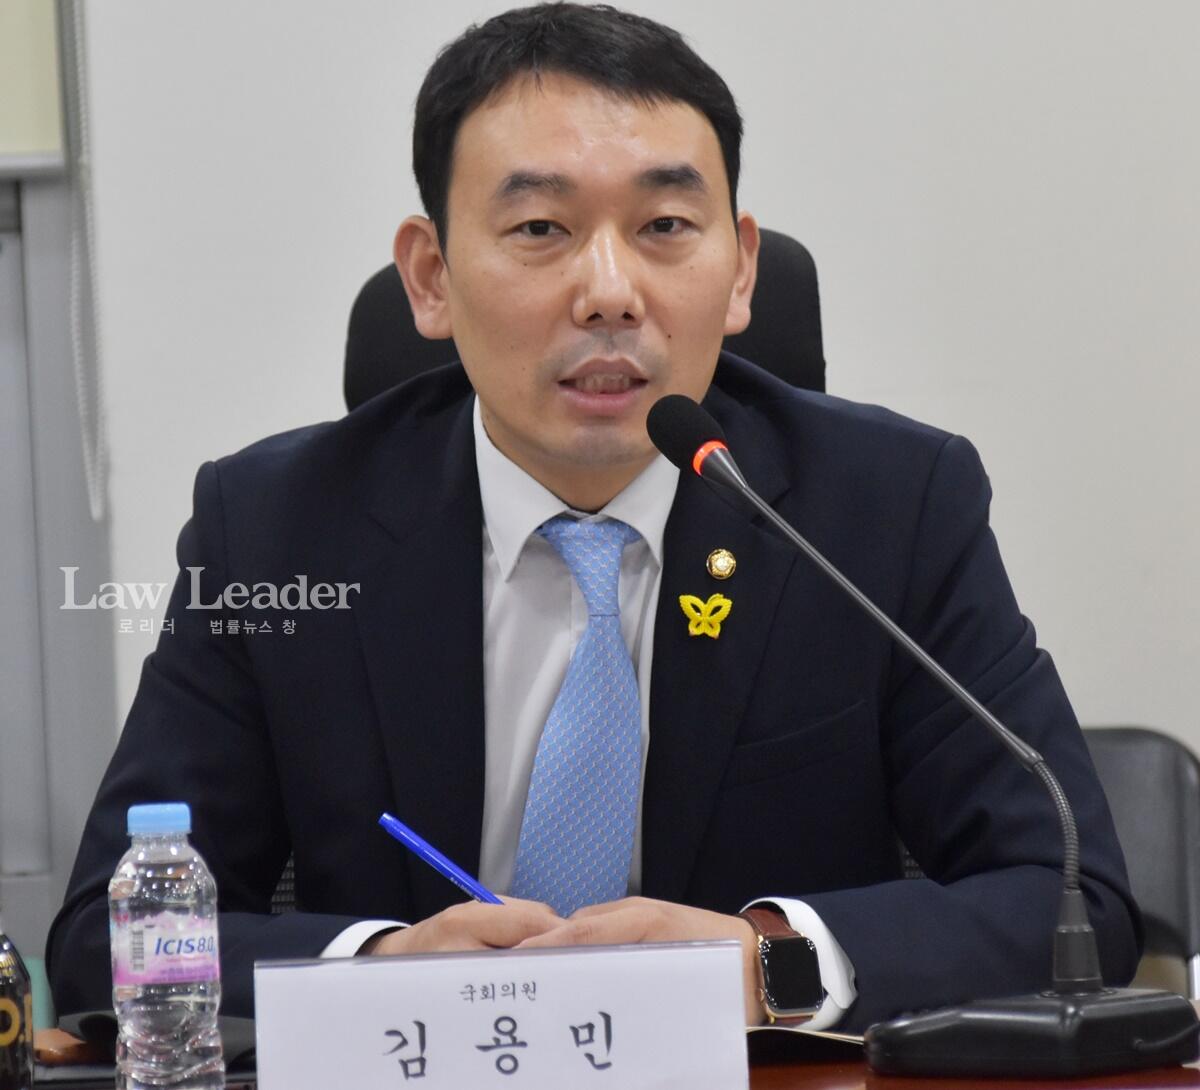 김용민 더불어민주당 국회의원